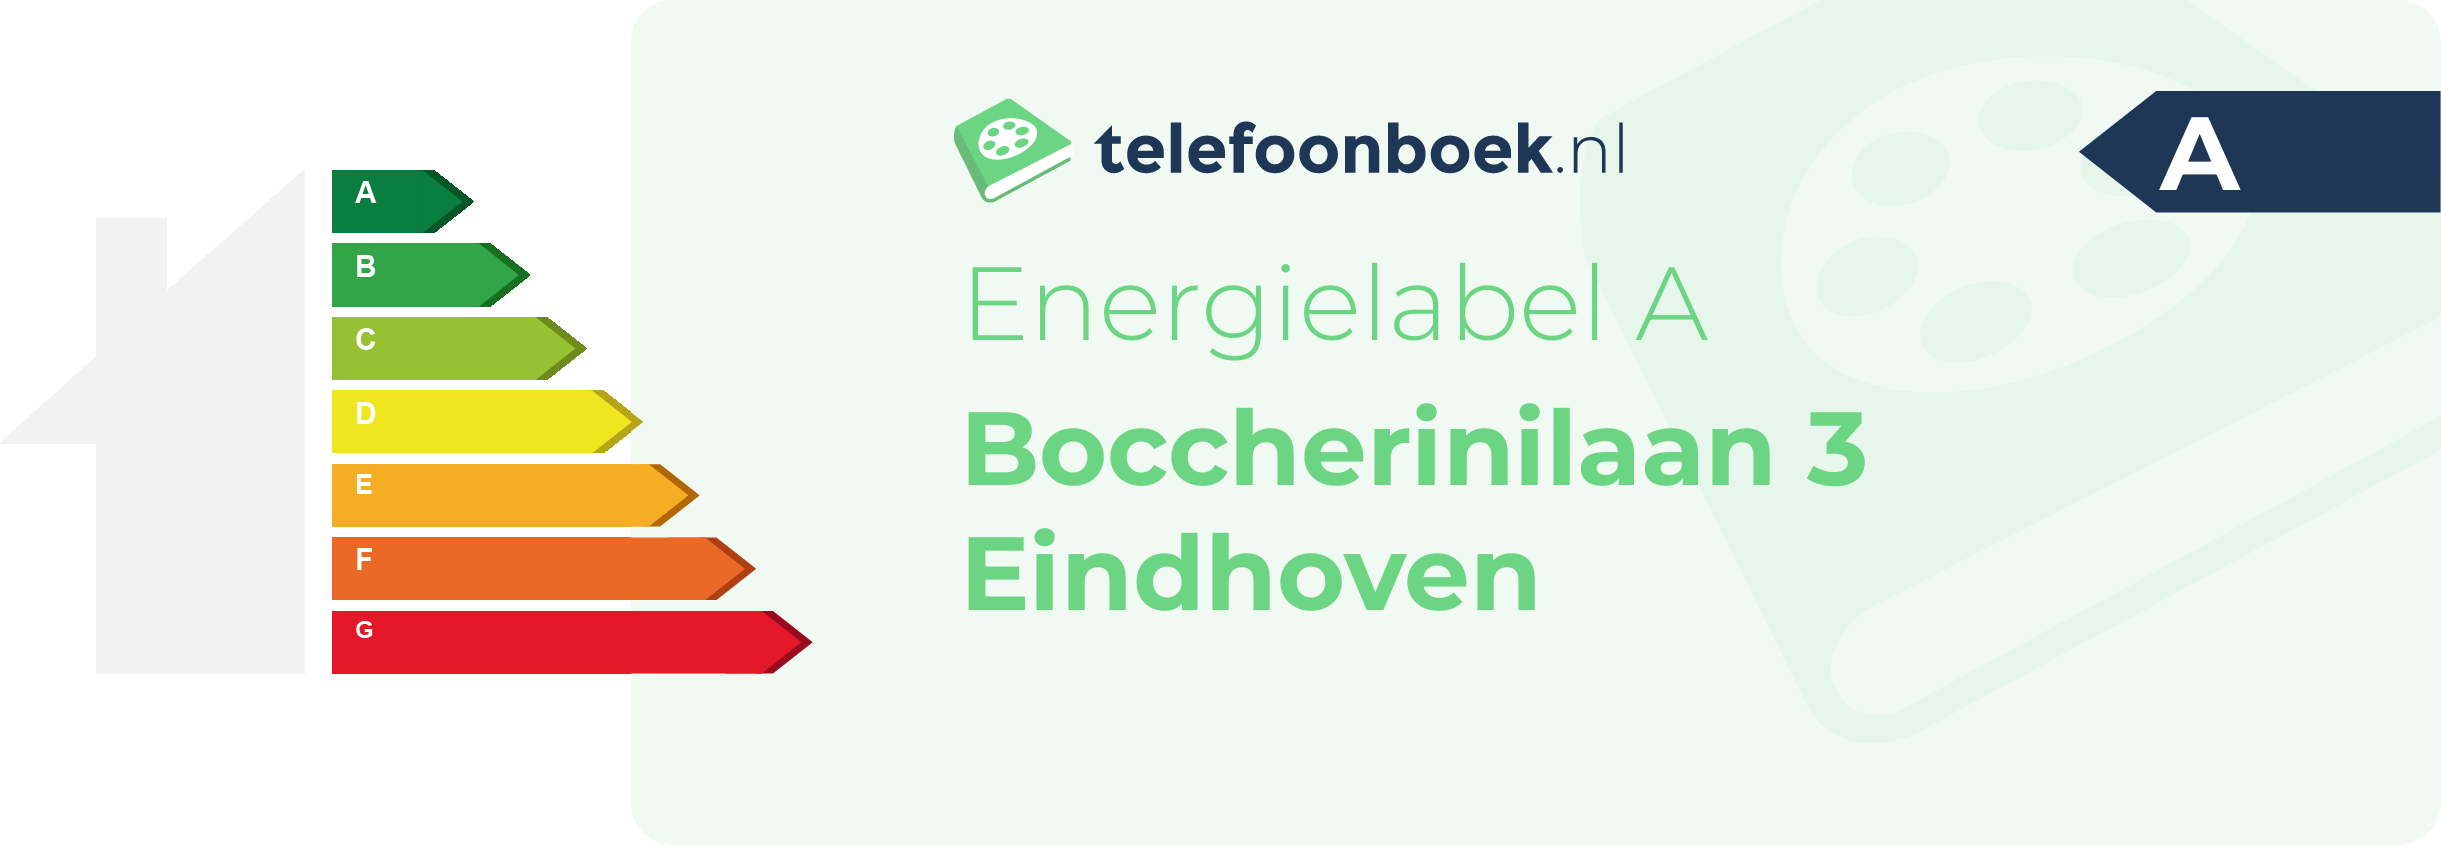 Energielabel Boccherinilaan 3 Eindhoven